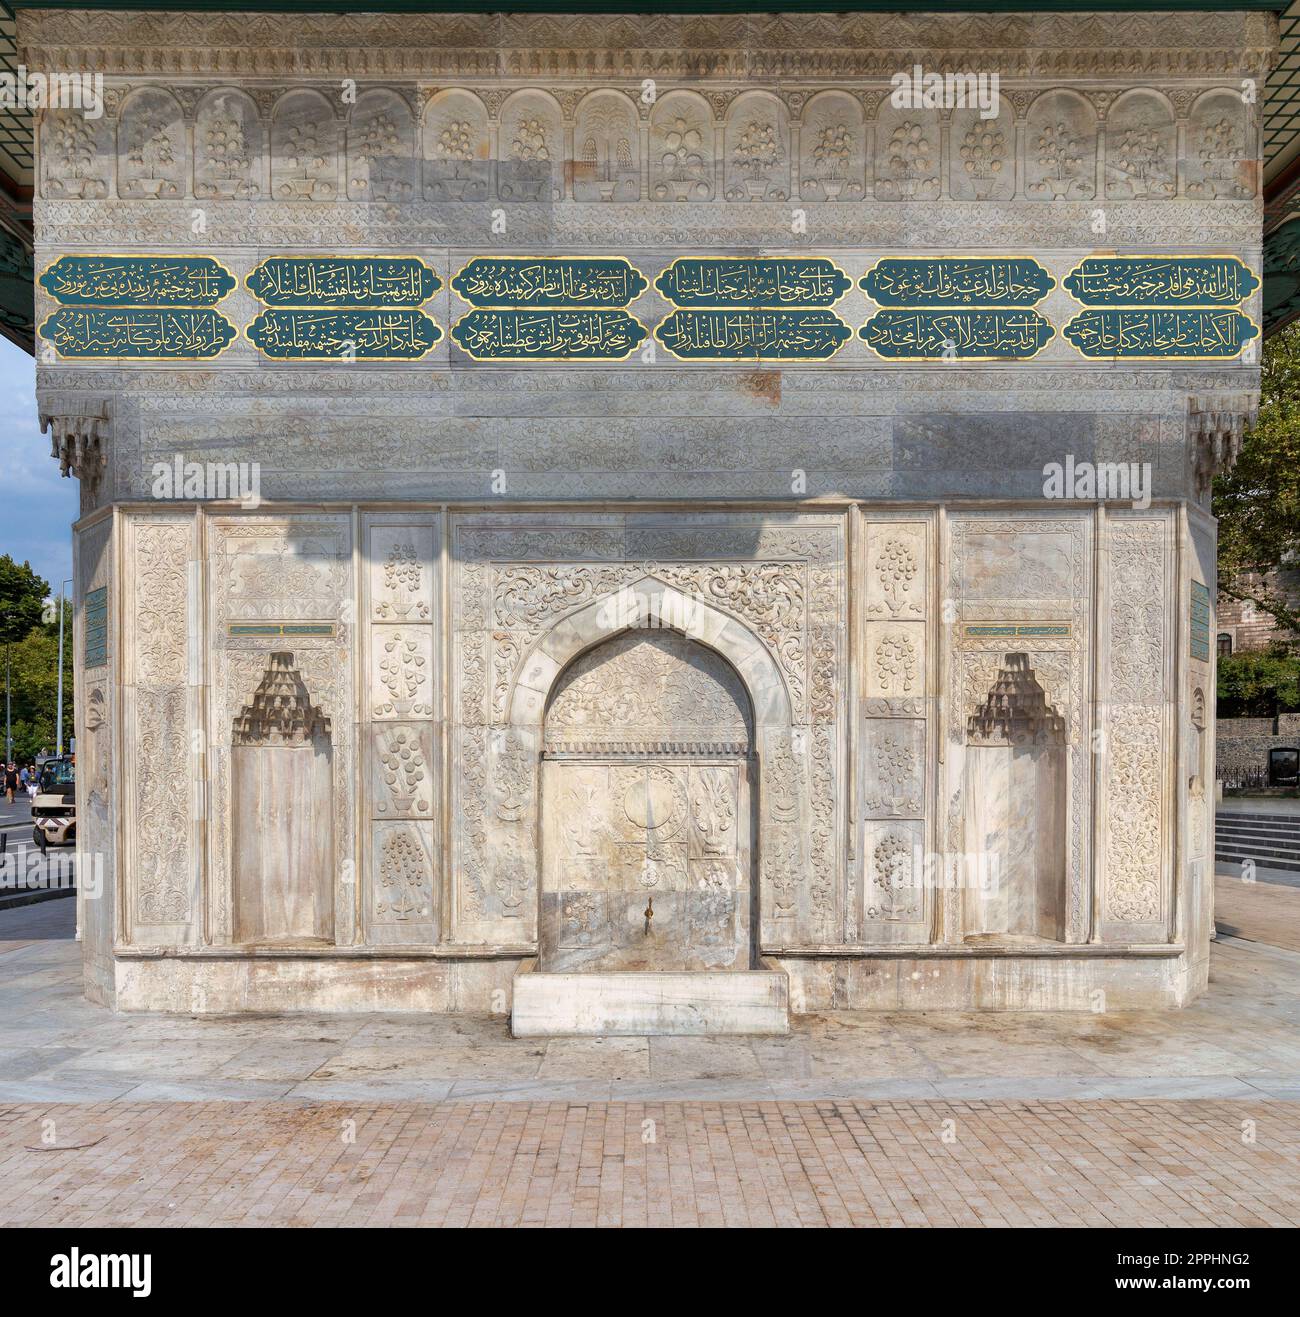 La fontaine Kilic Ali Pasha, ou fontaine Tophane, une fontaine d'eau publique du 18e siècle, ou Sabil, Beyoglu, Istanbul, Turquie Banque D'Images